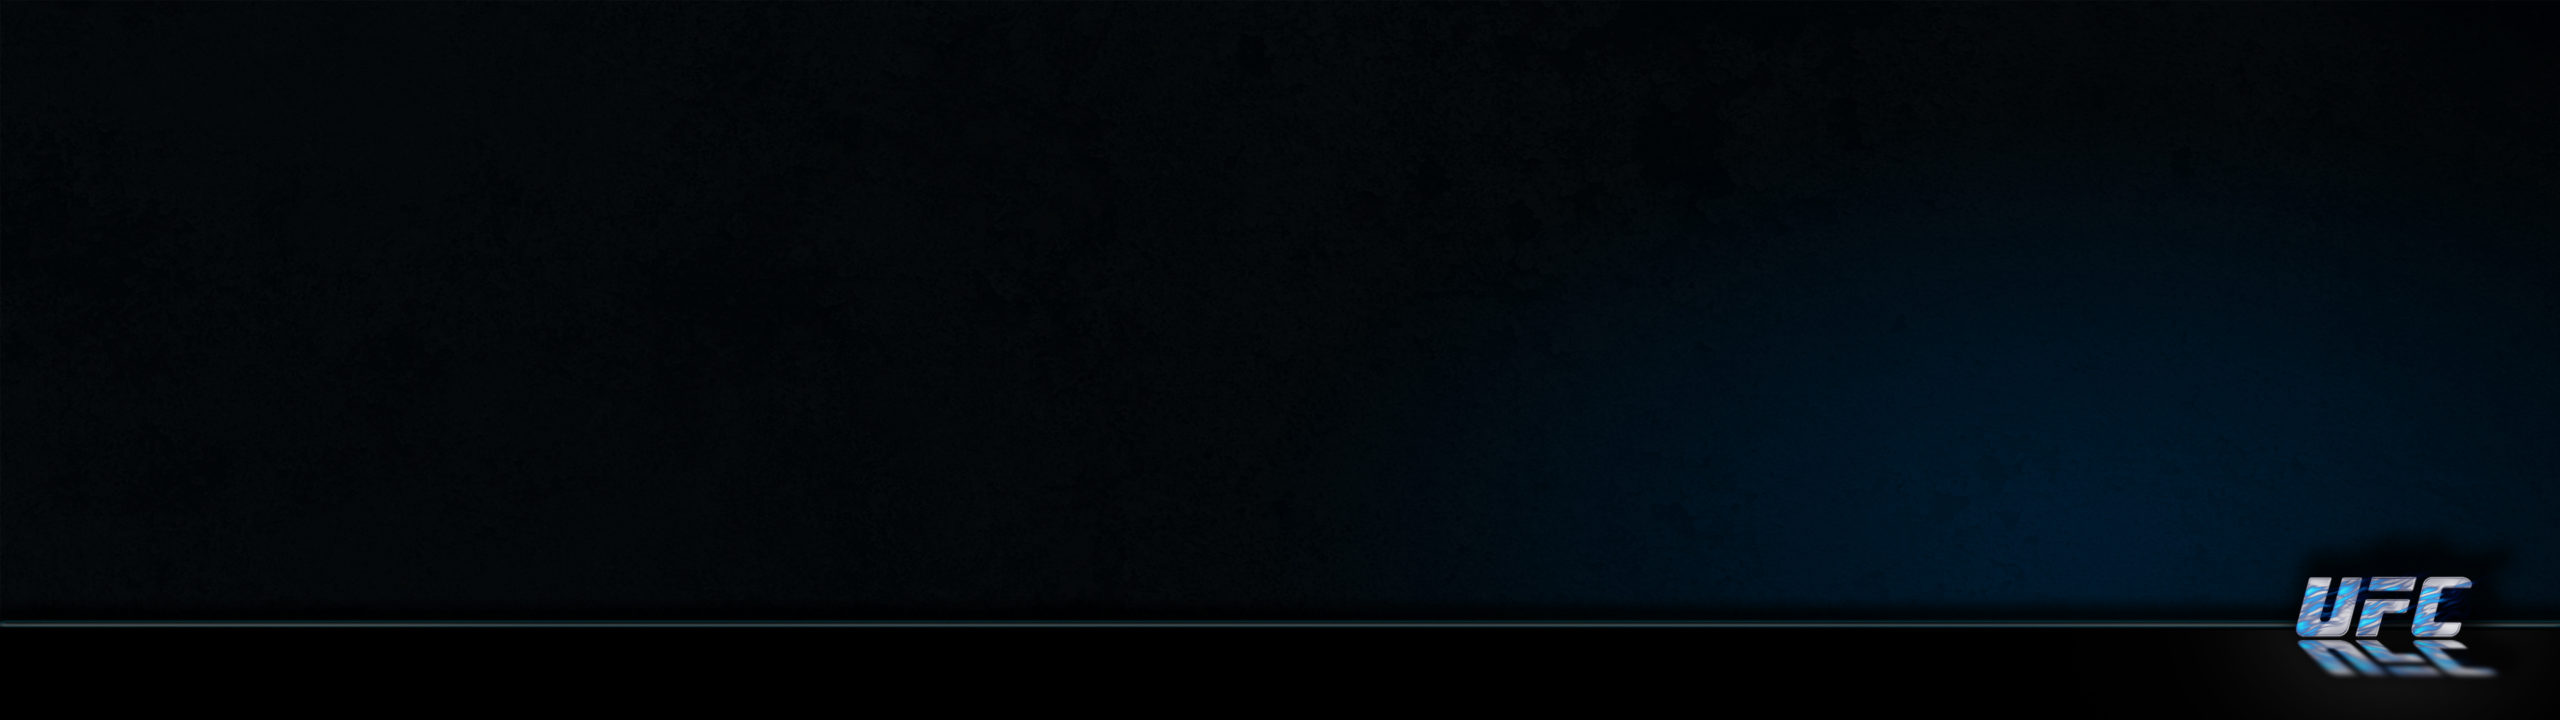 Ufc Flames Grunge Dark 3 Blue Background 1080×3840